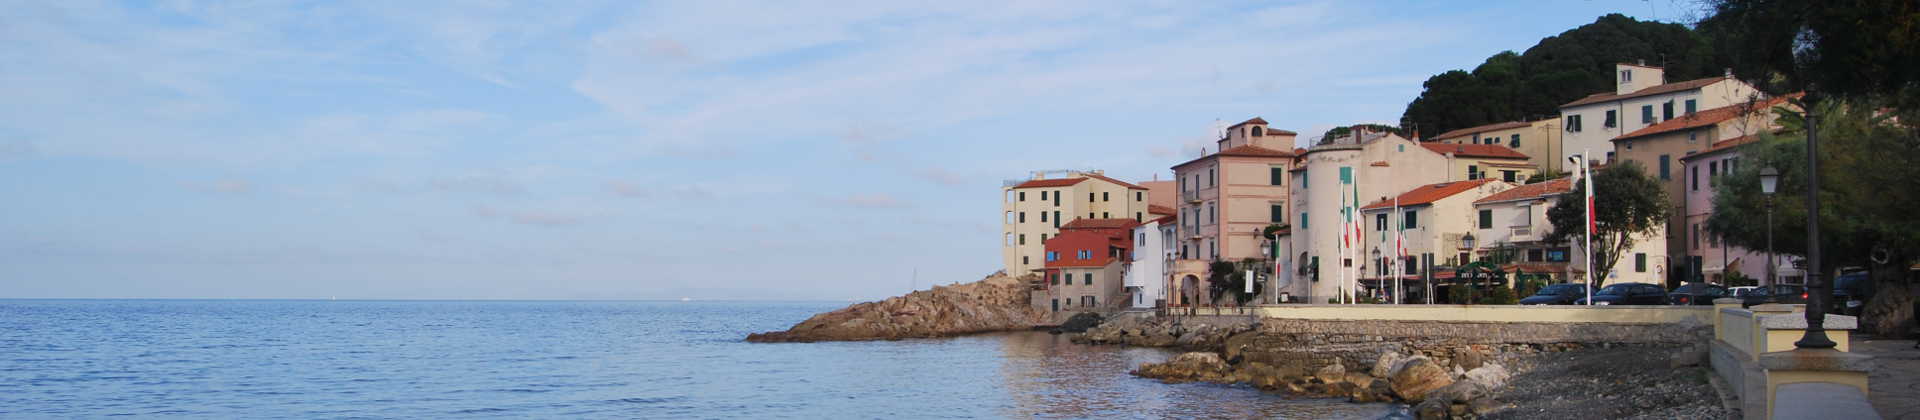 Marciana Marina - Isola d'Elba